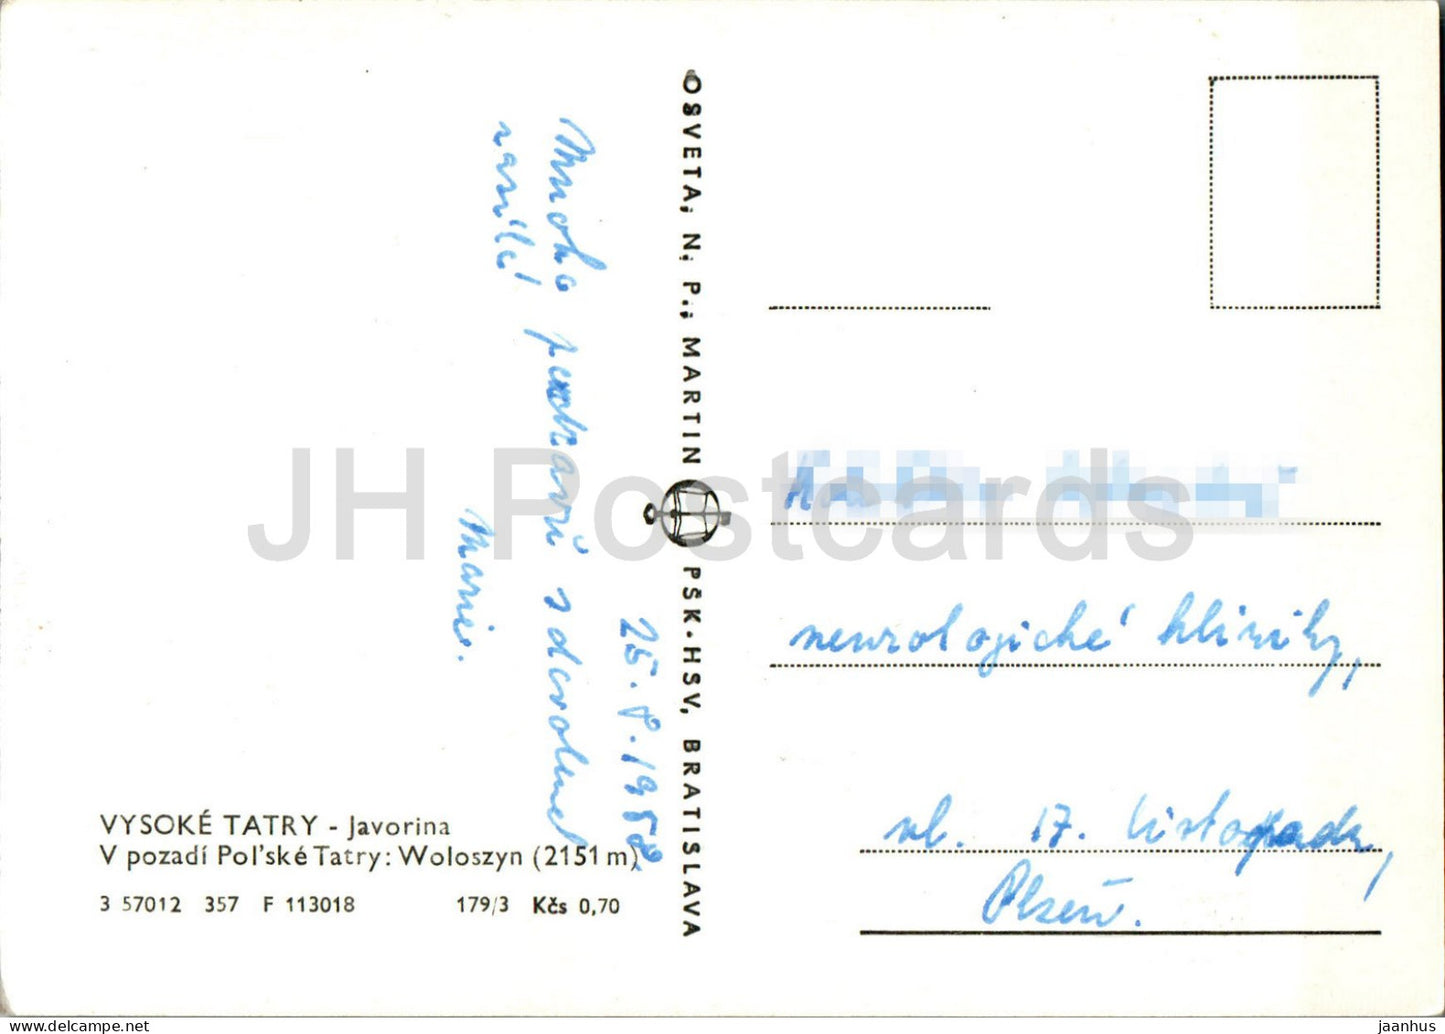 Vysoke Tatry - Javorina - V pozadi Polske Tatry - Hohe Tatra - alte Postkarte - 1958 - Slowakei - Tschechoslowakei - gebraucht